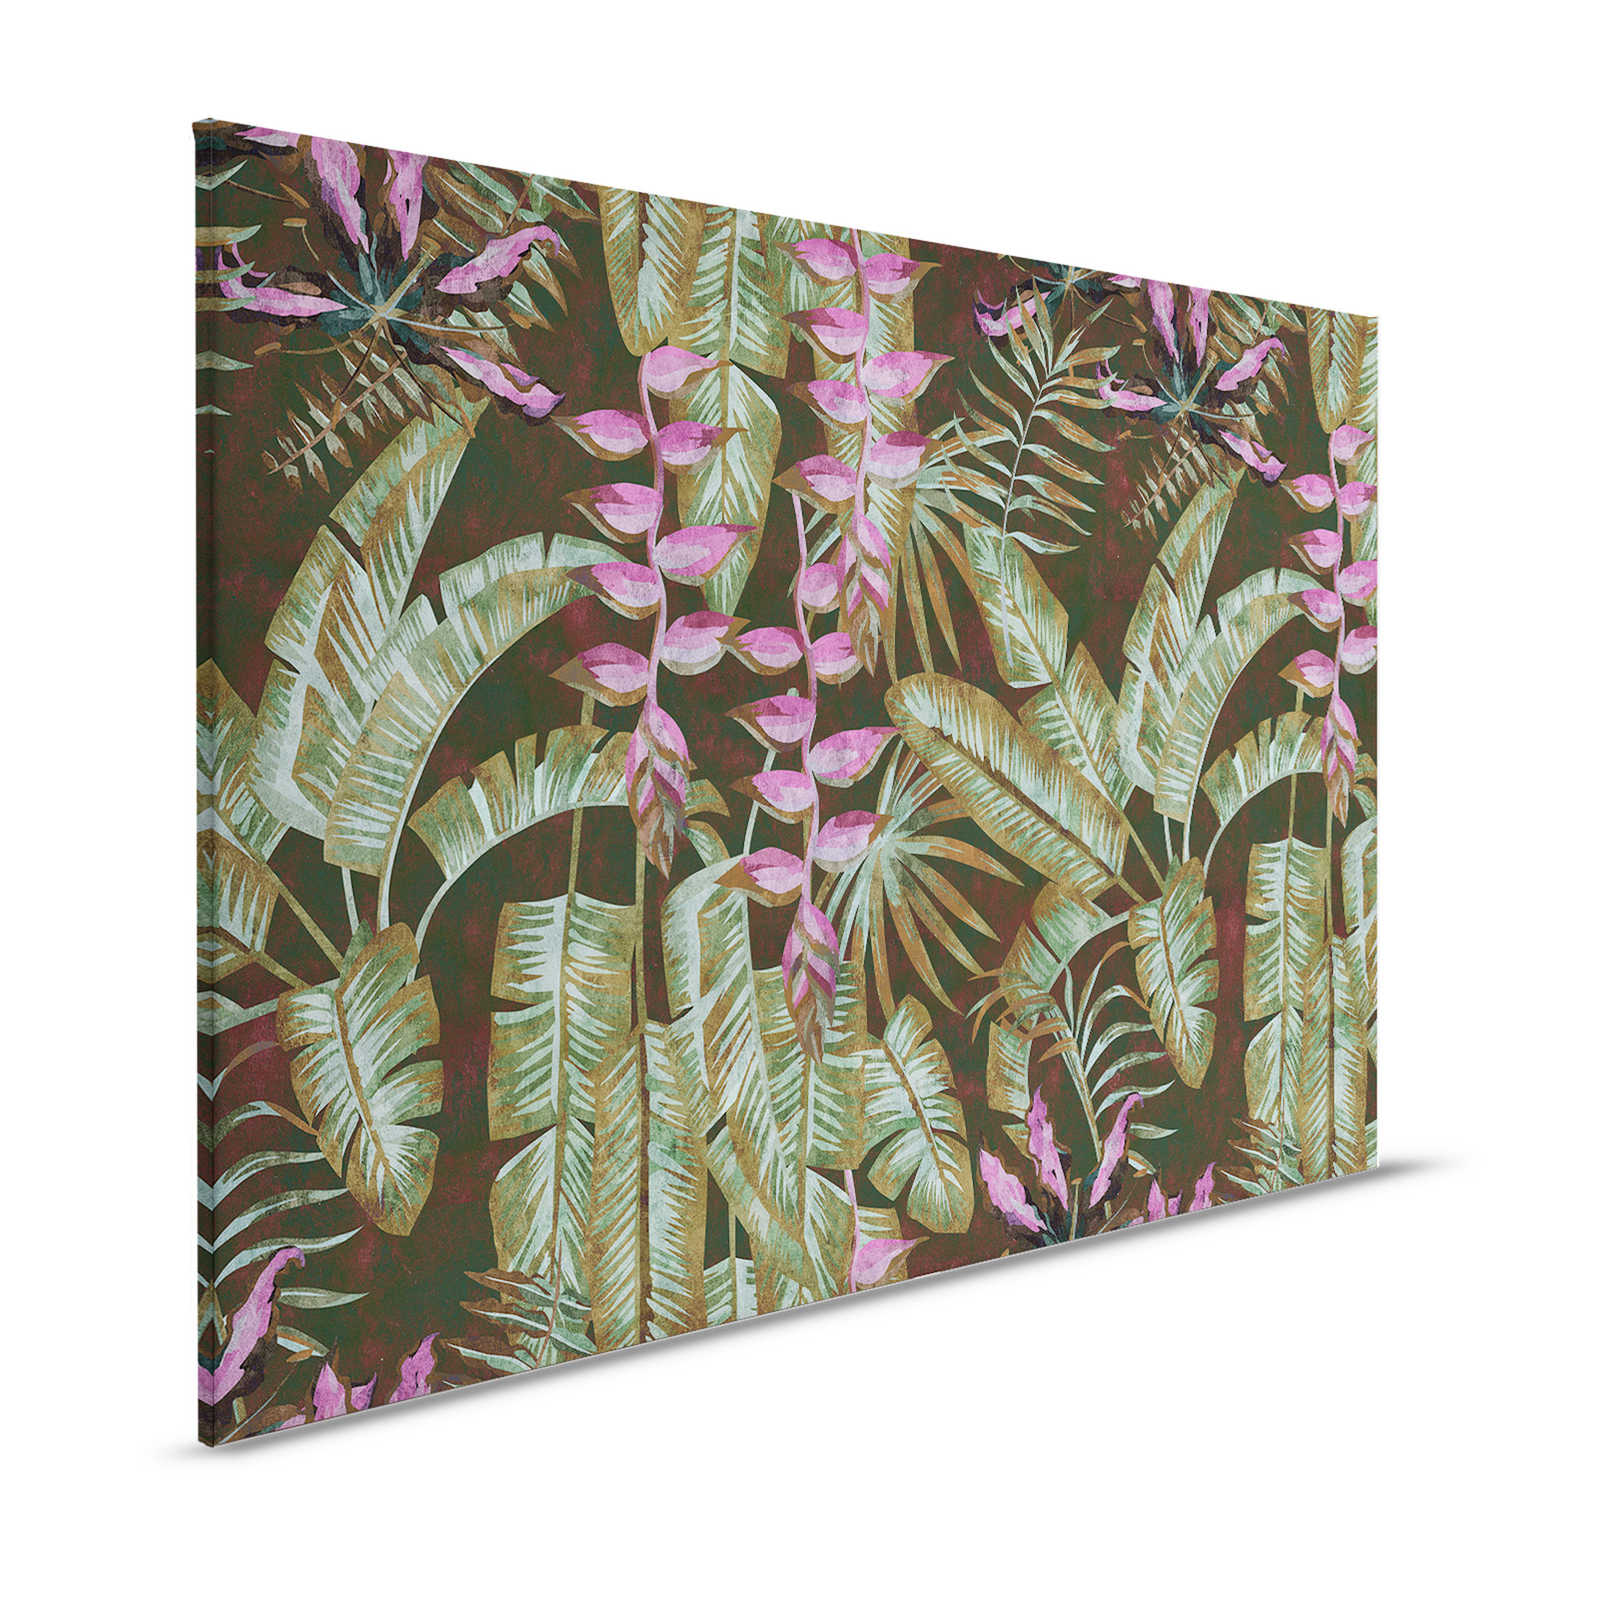 Tropicana 1 - Quadro su tela della giungla con foglie di banano e felci - 1,20 m x 0,80 m
